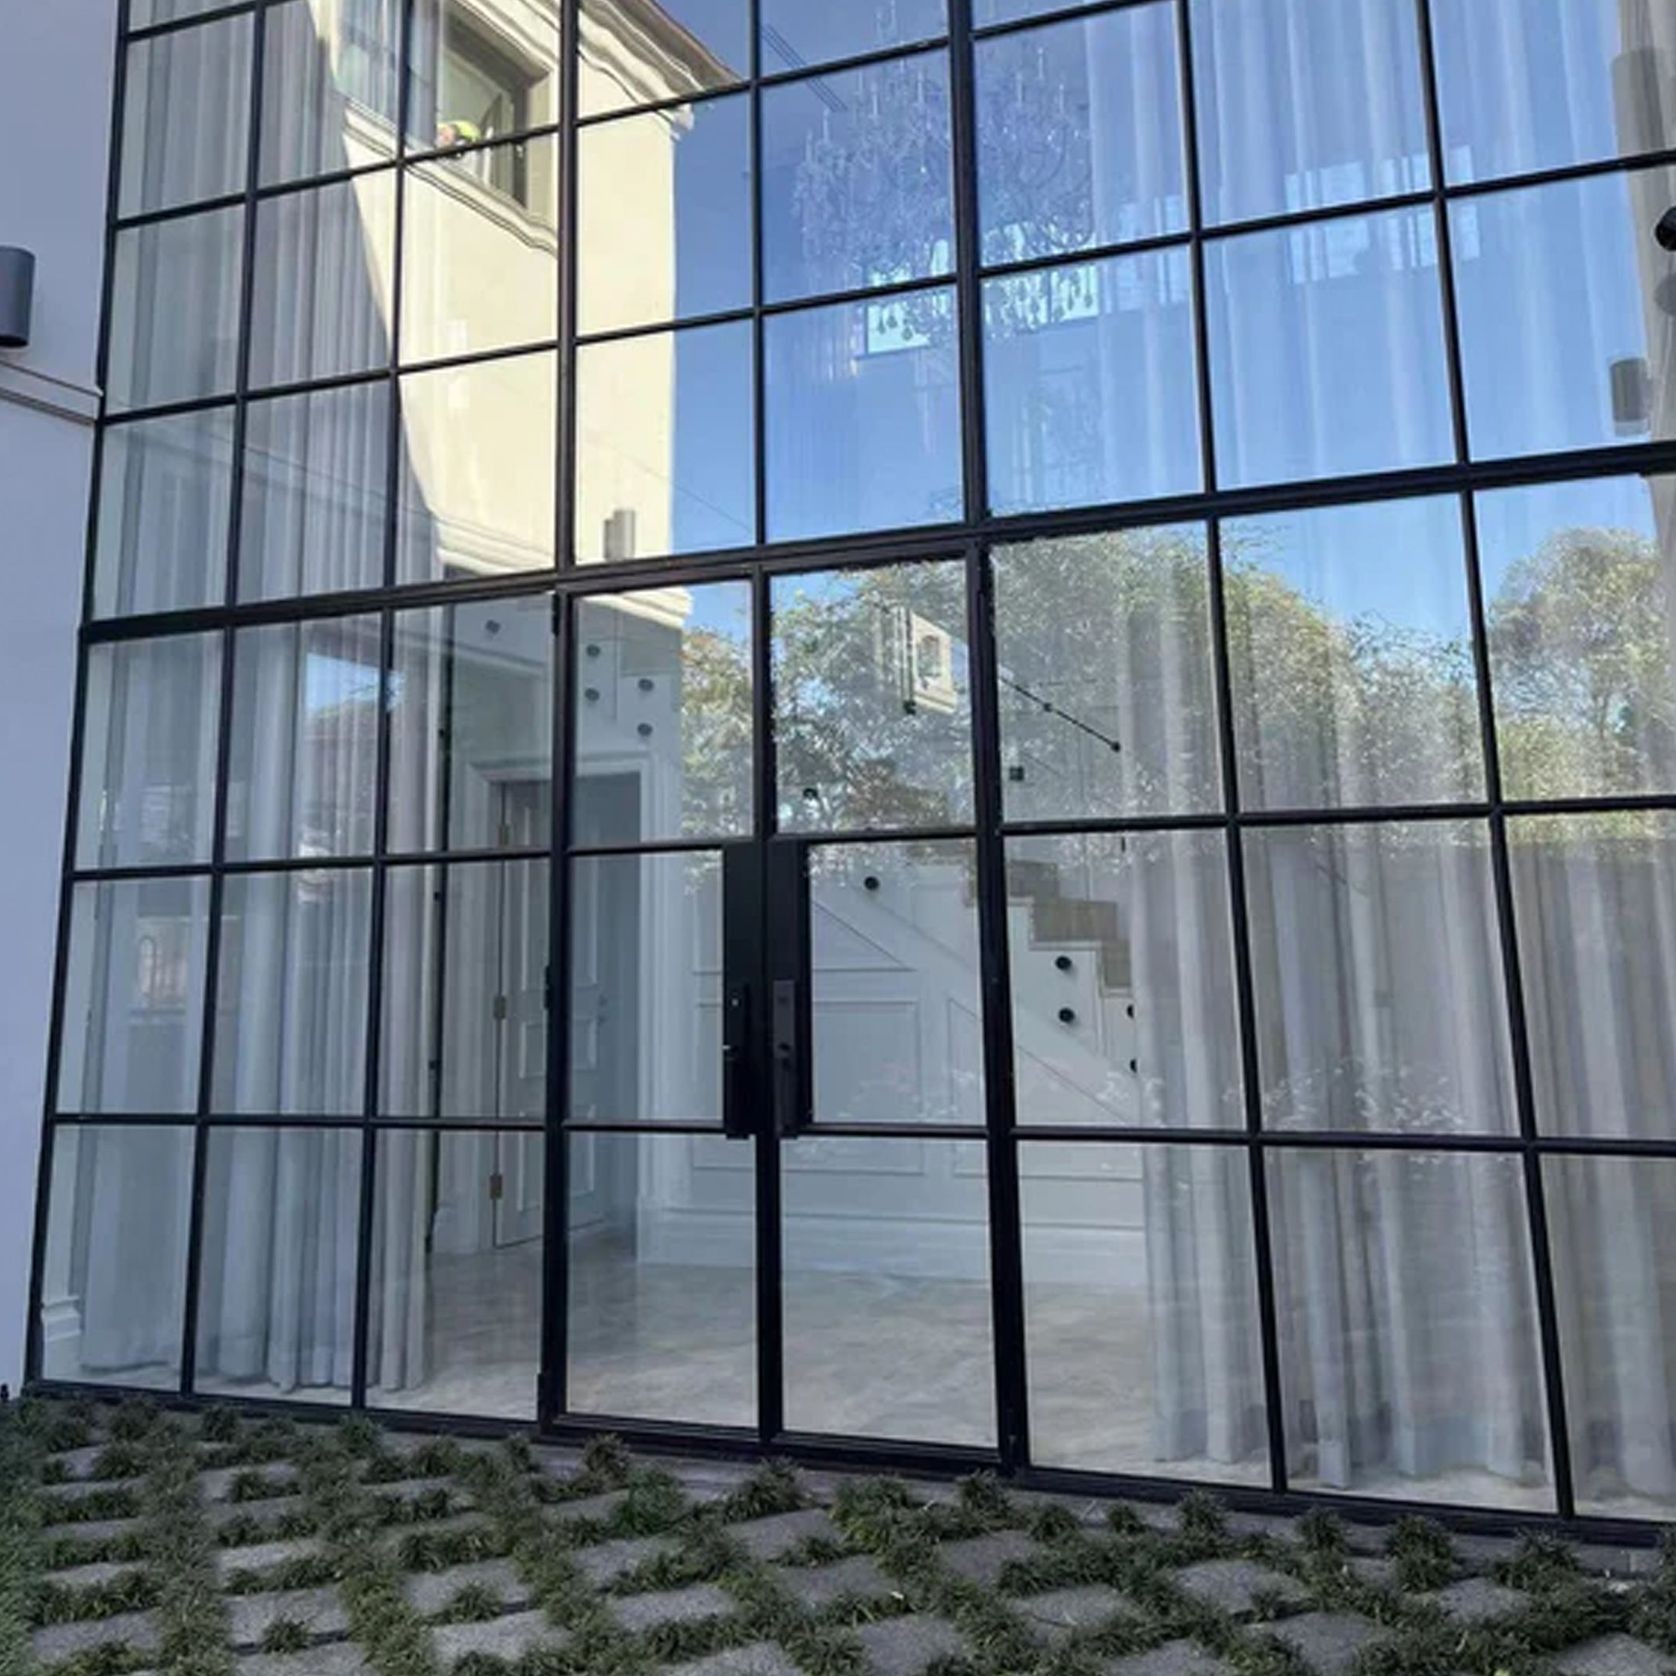 Steel Frame Glass Hinge Doors - Galvanised W40 gallery detail image